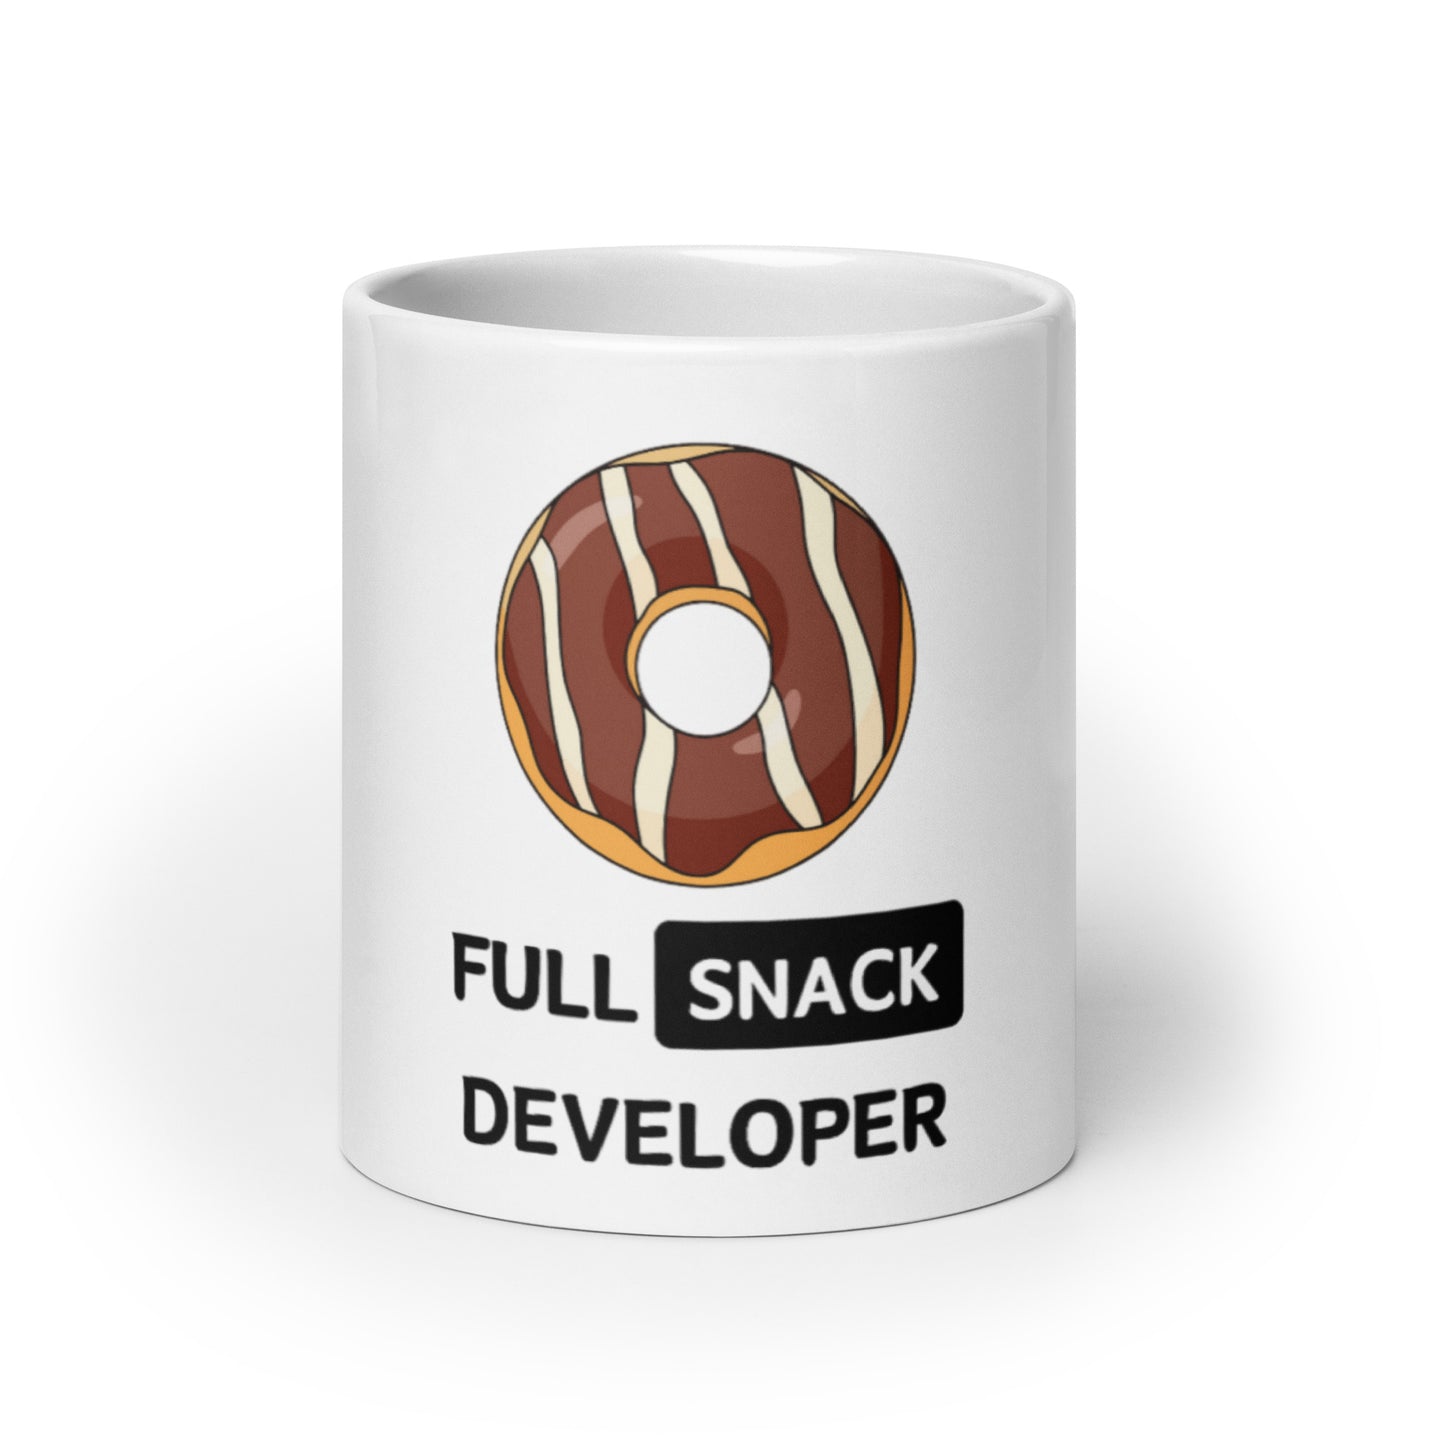 Full Snack Developer mug